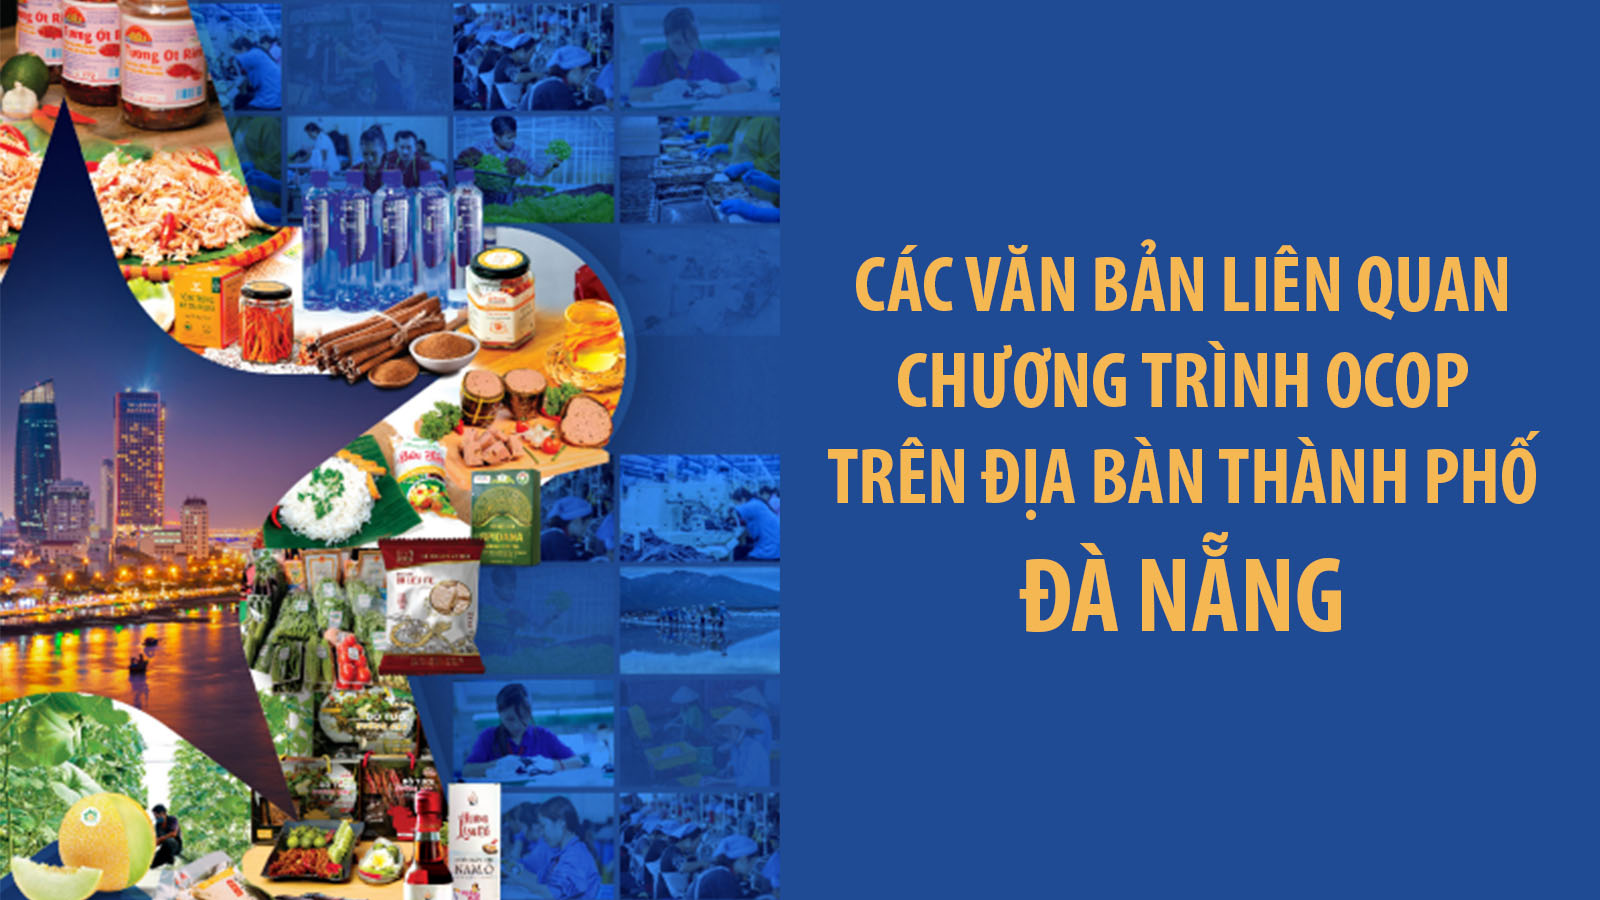 Cac Van Ban Lien Quan Chuong Trinh Ocop Tren Dia Ban Thanh Pho Da Nang 02